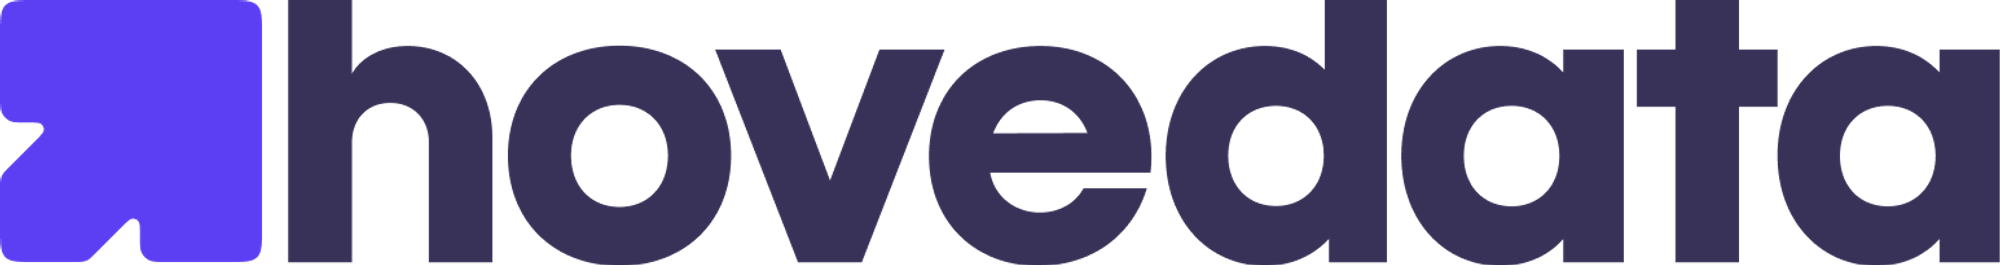 hovedata.com Logo